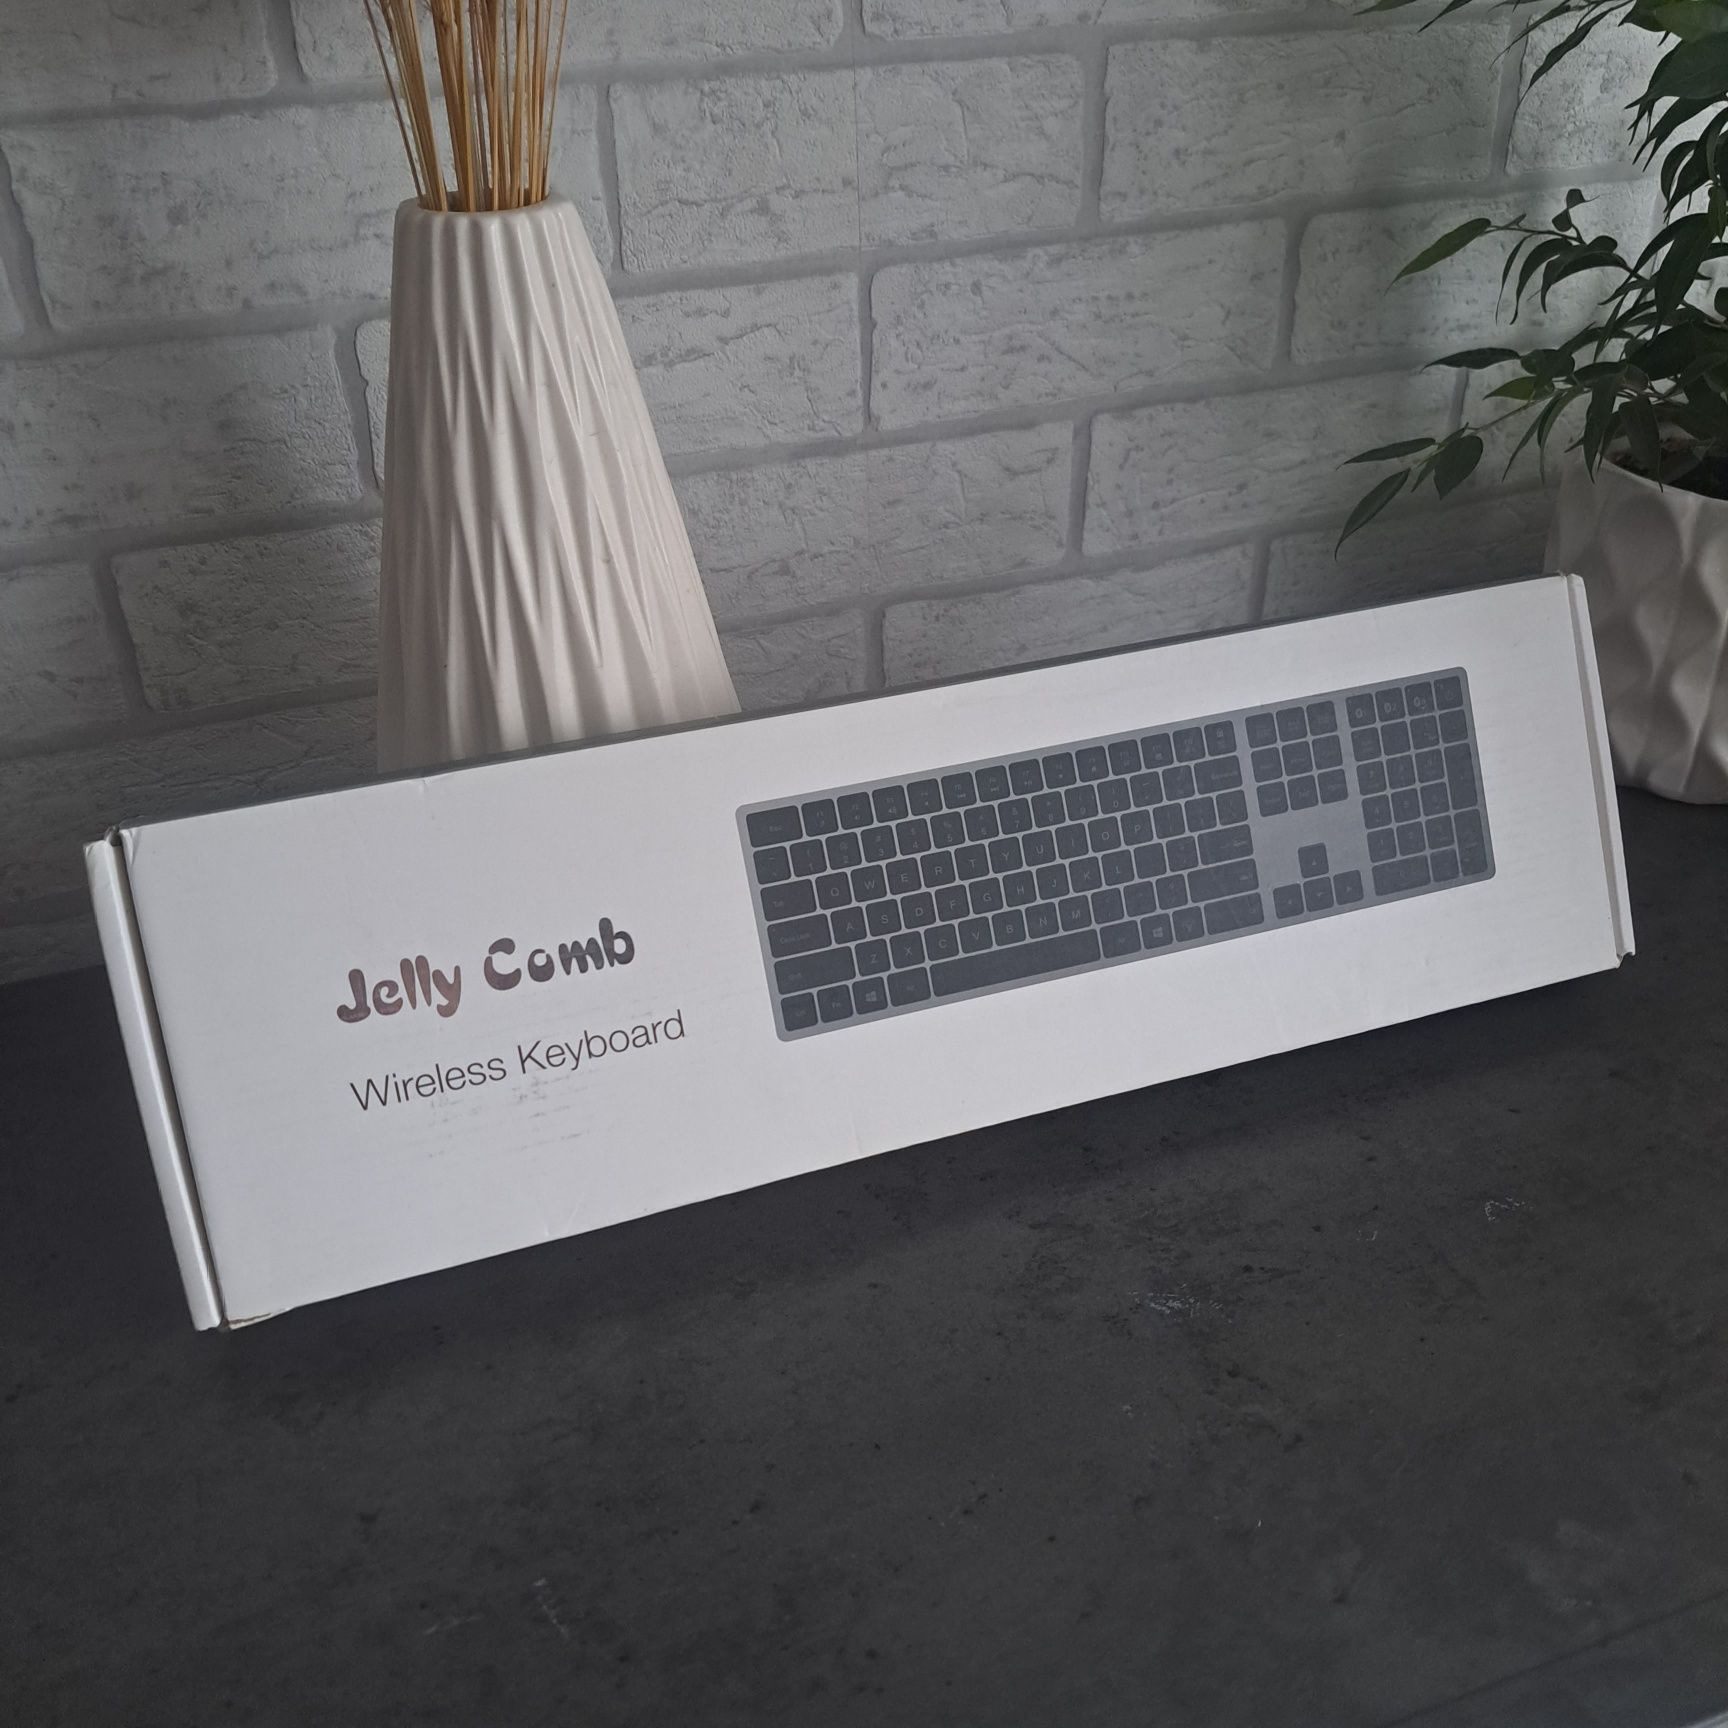 Klawiatura Jelly Comb Wireless Keyboard